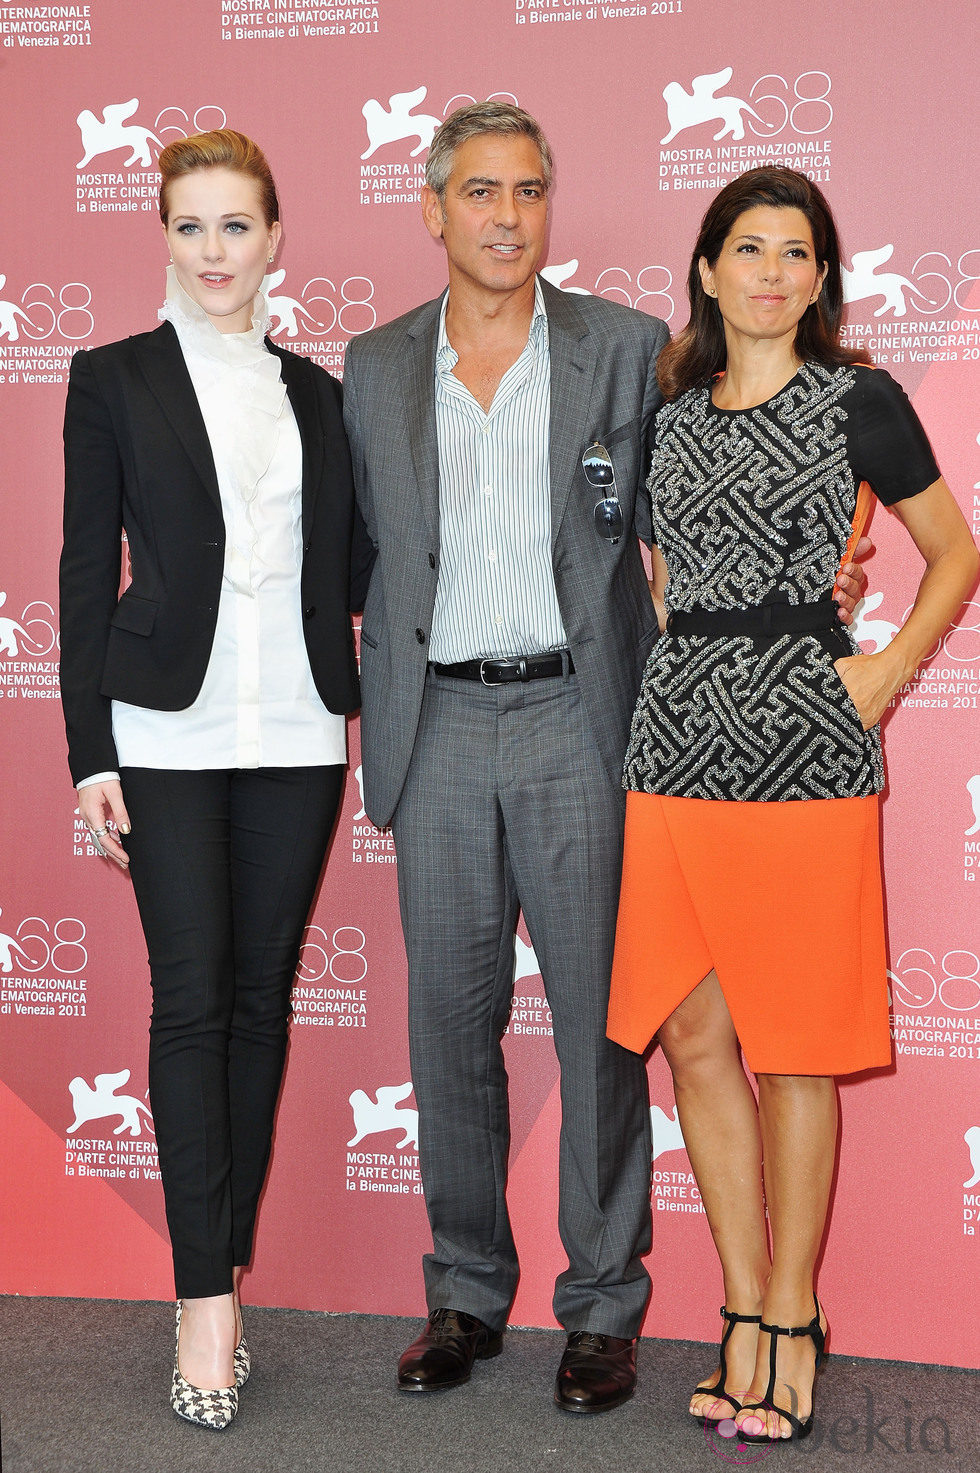 Evan Rachel Wood, George Clooney y Marisa Tomei presentan 'The ides of march' en Venecia